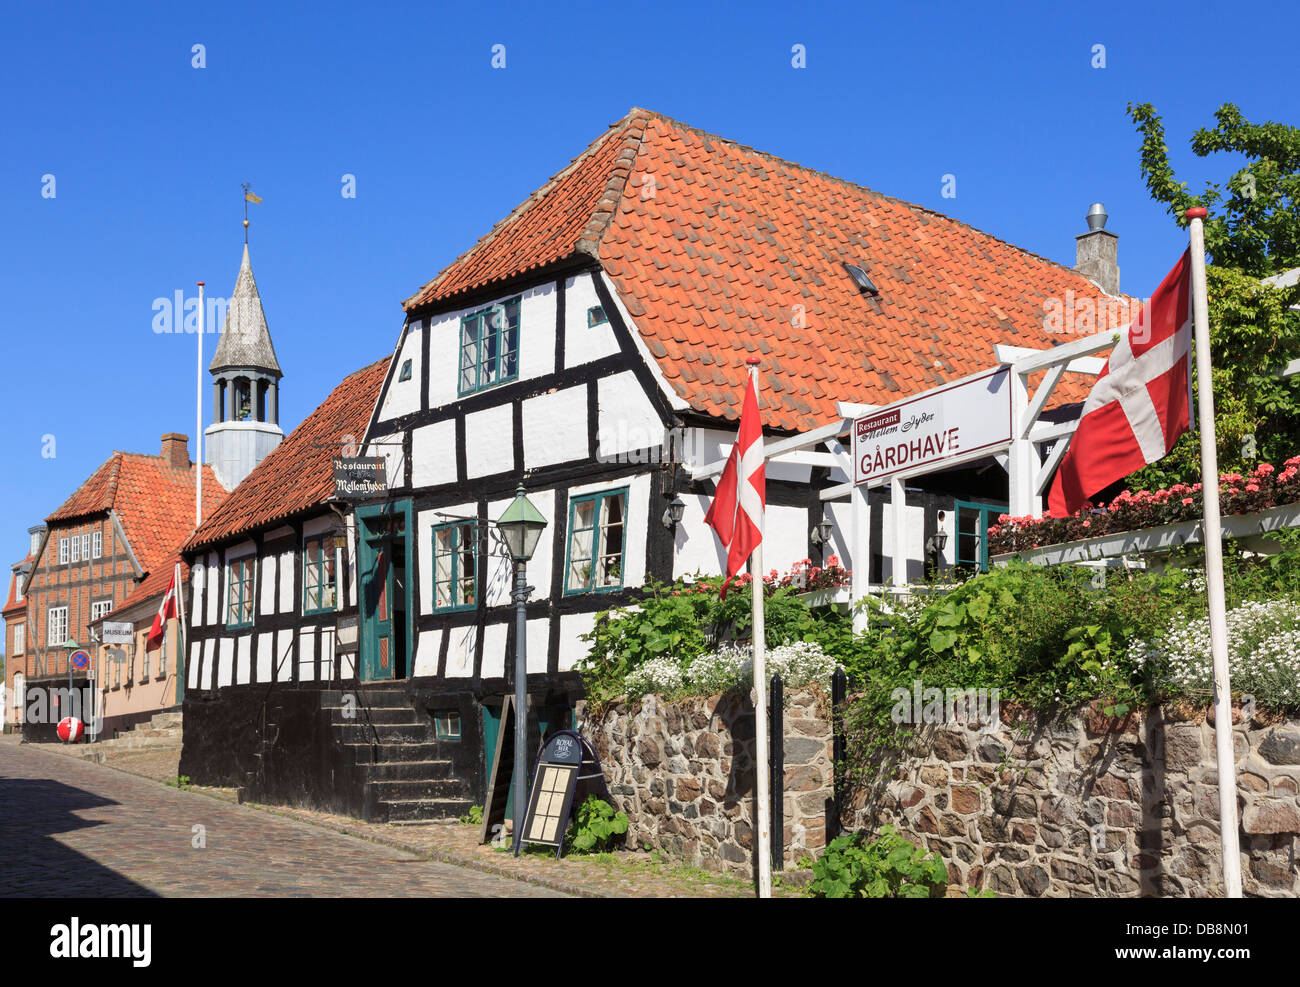 Jyder at Restaurant à vieux bâtiment à colombages dans petite ville historique. Juulsbakke, Ebeltoft, Jutland, Danemark, Scandinavie Banque D'Images